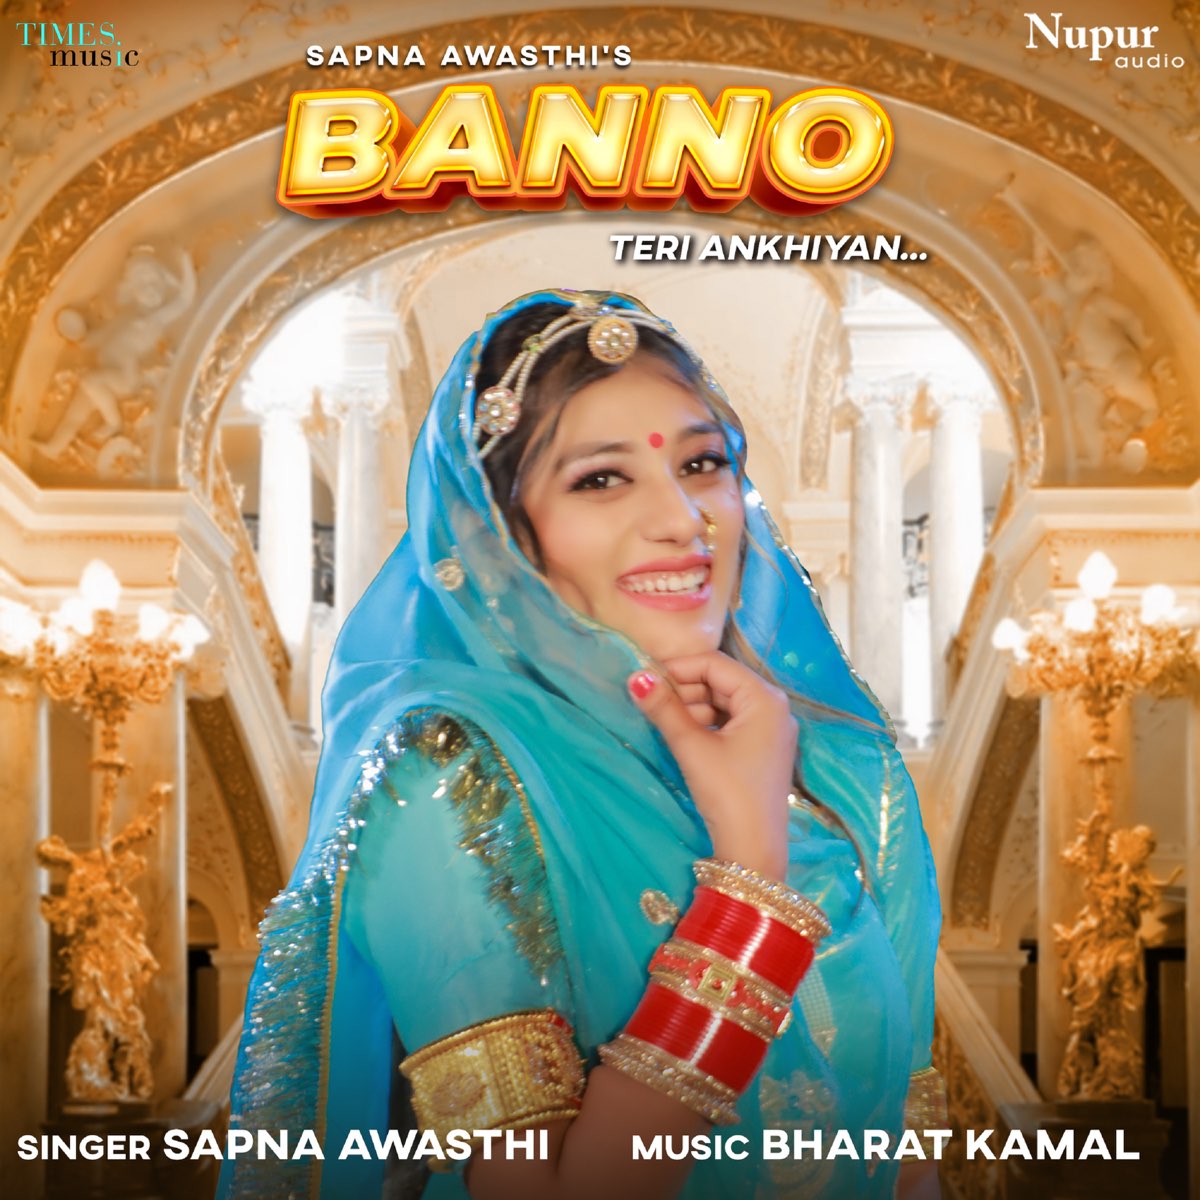 Banno Teri Akhiyan - Single by Sapna Awasthi on Apple Music